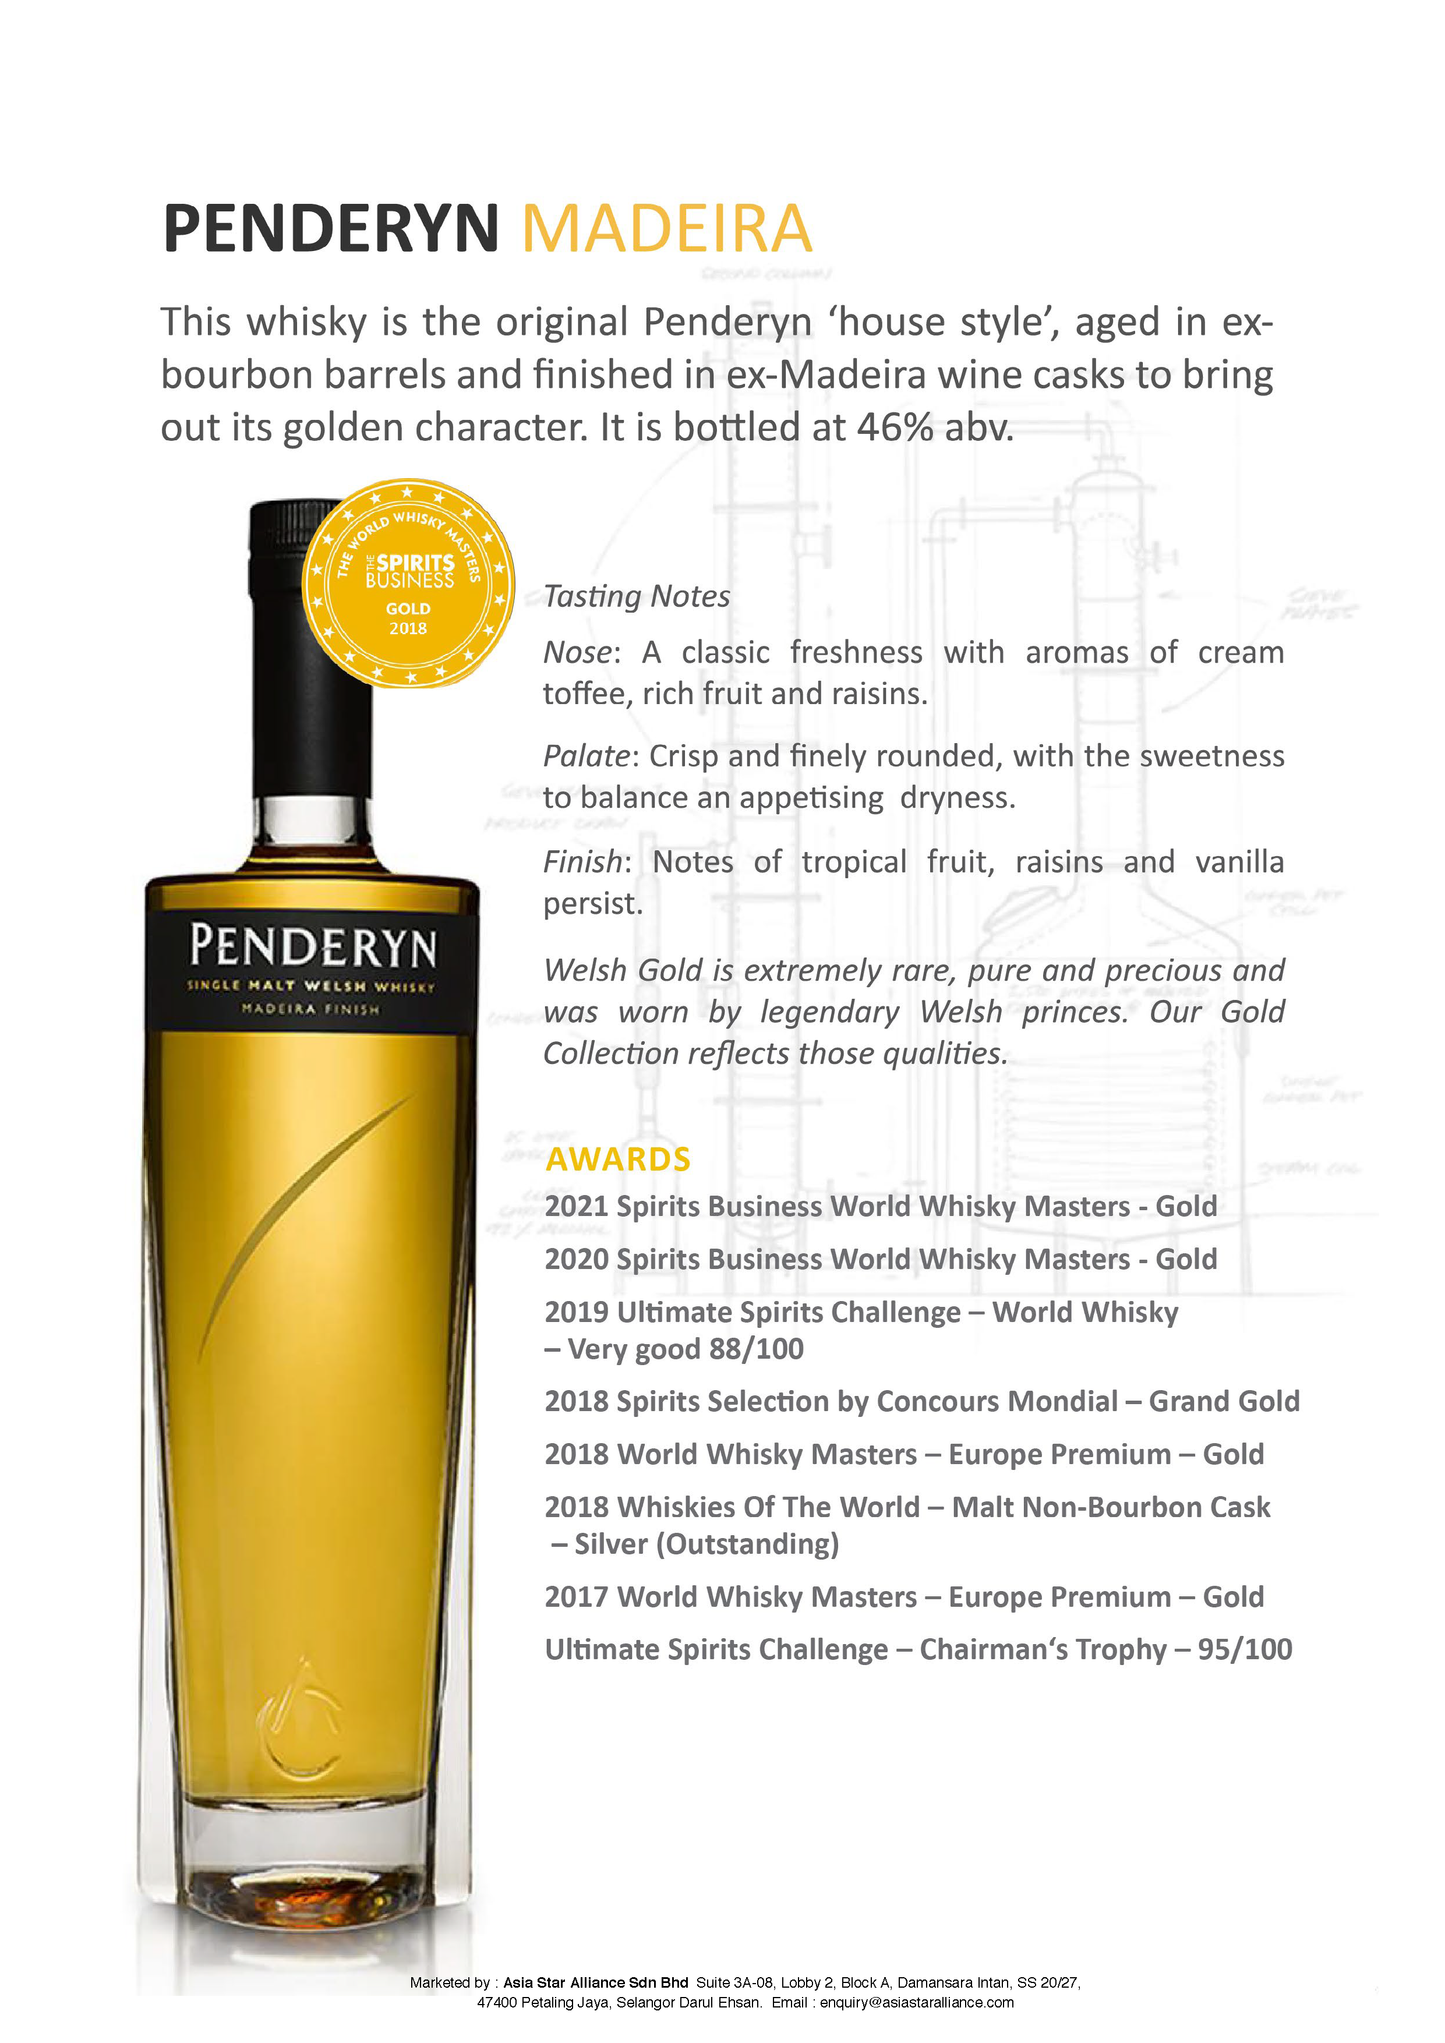 Penderyn Madeira Single Malt Welsh Whisky [700ml]